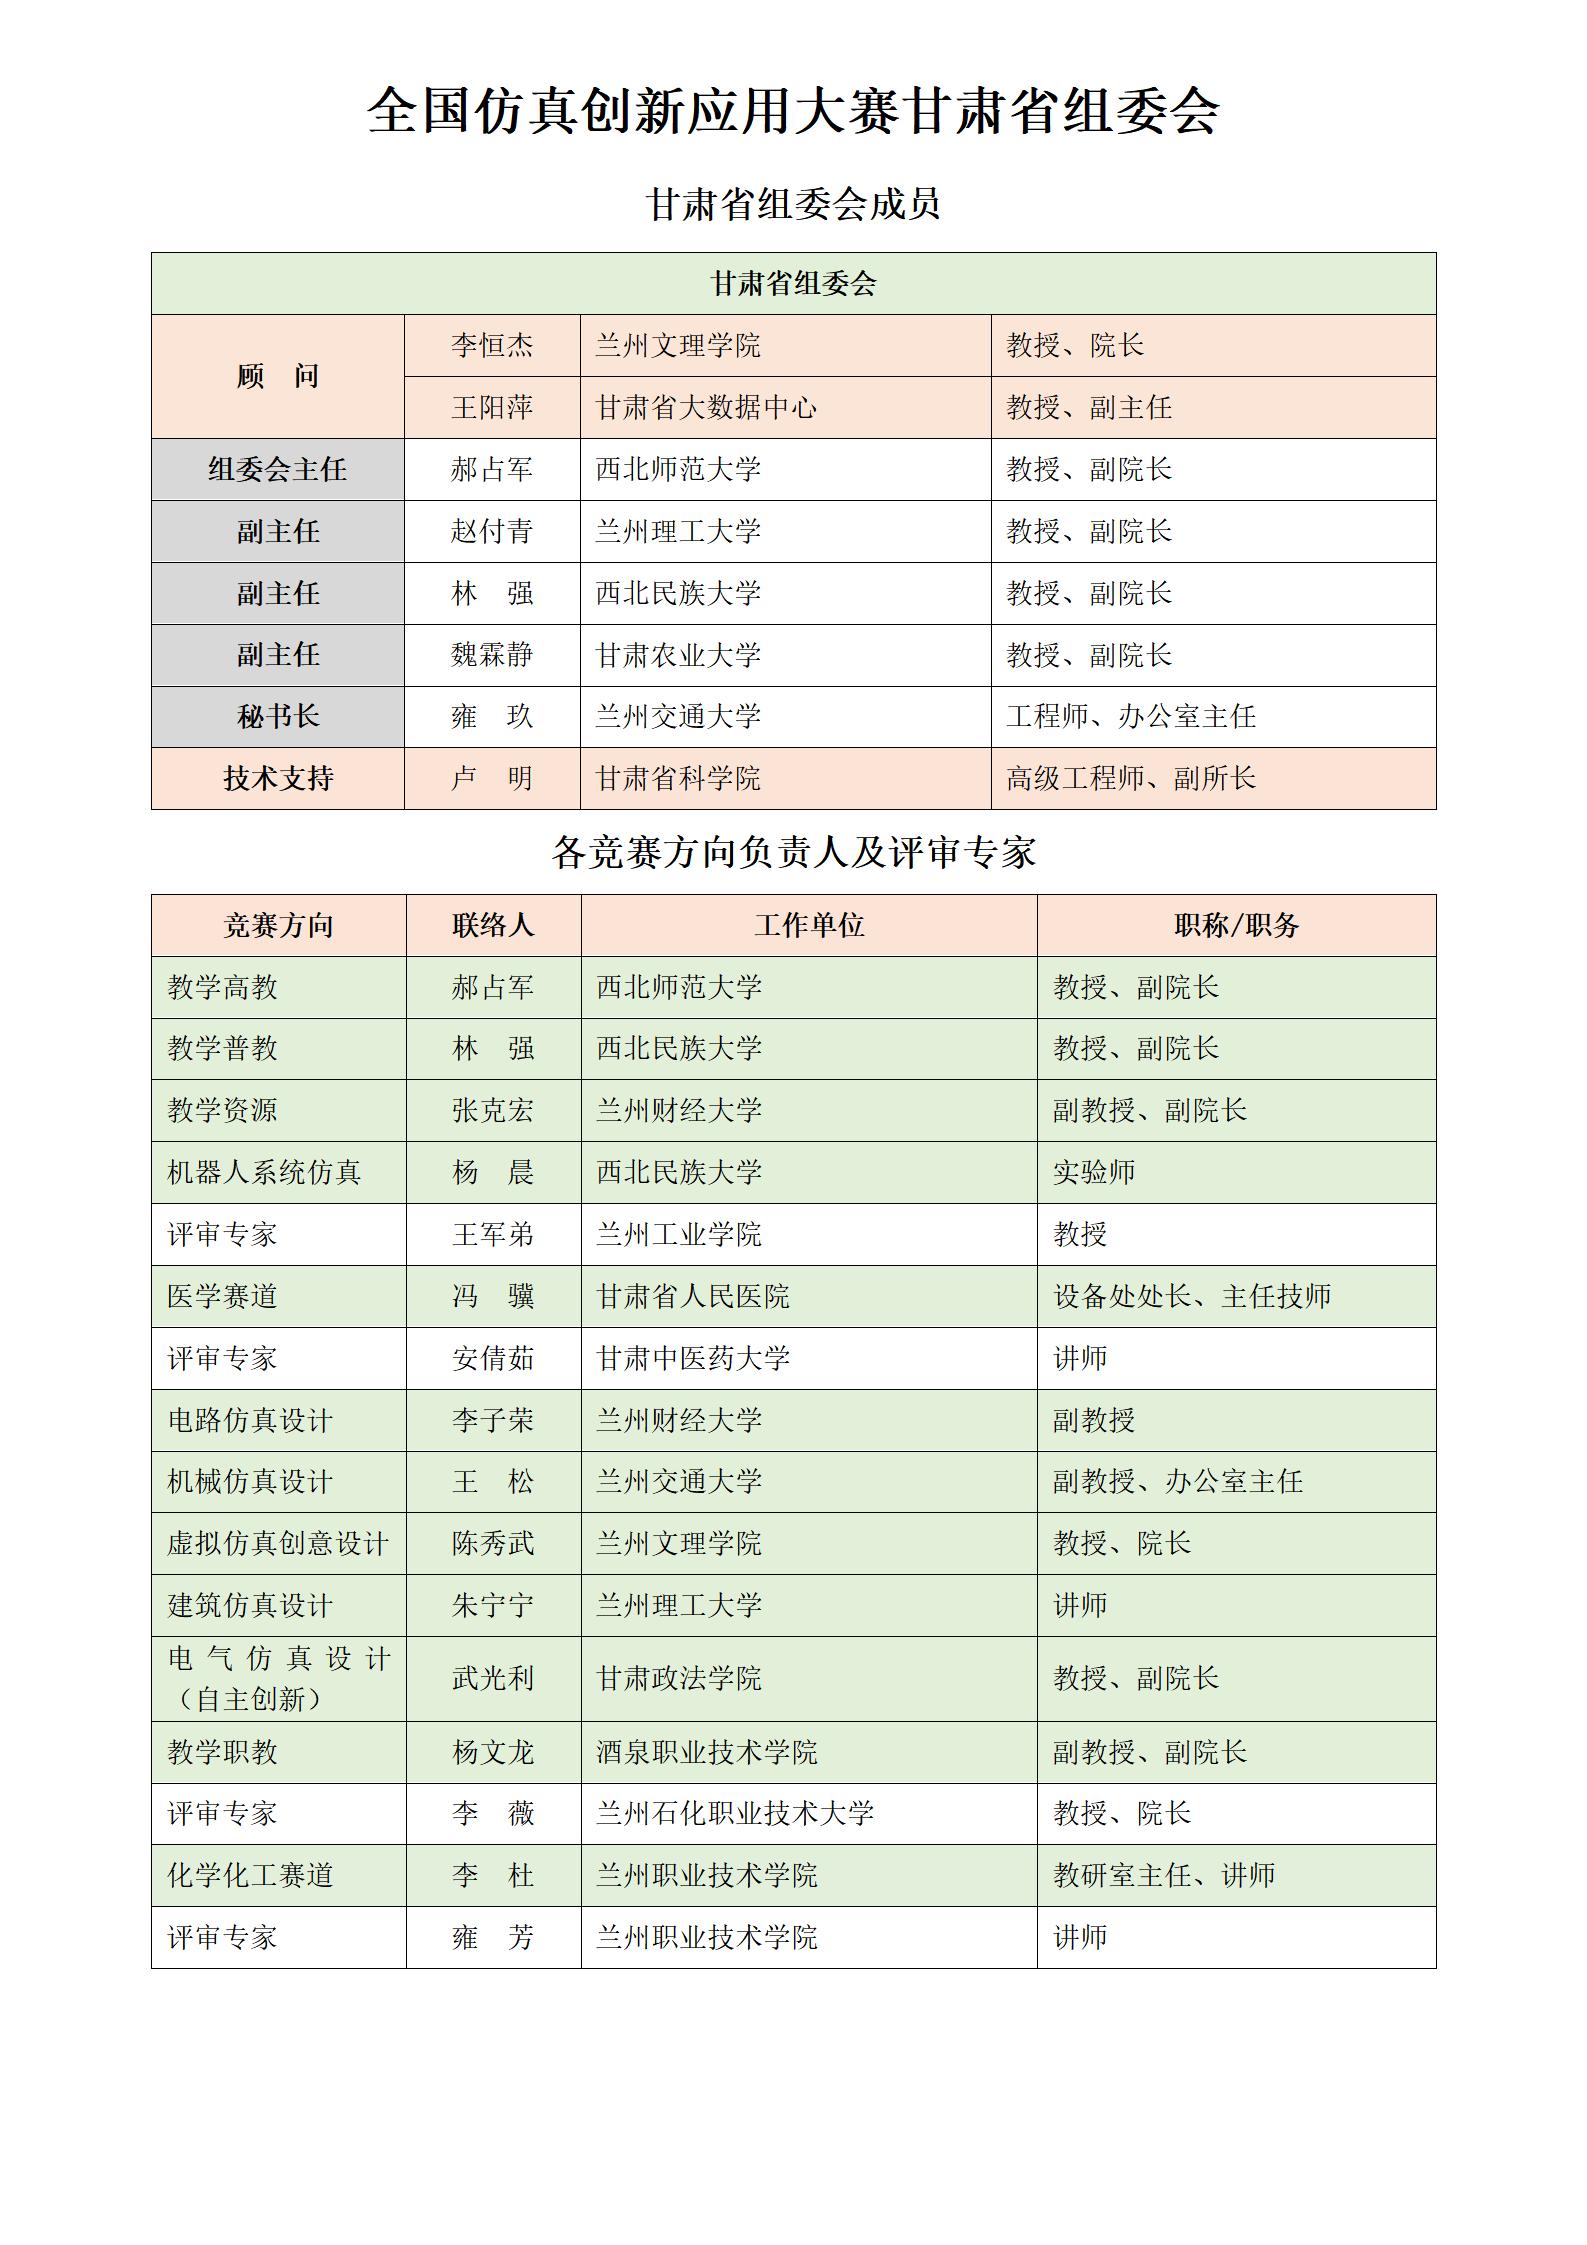 甘肃省赛区组委会及专家名录对外公布版_01.jpg